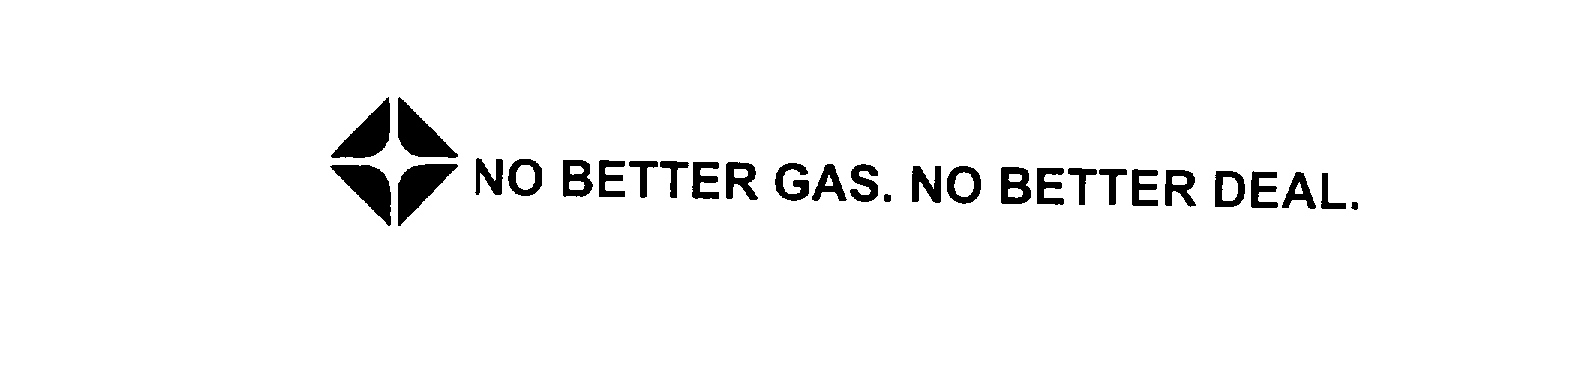  NO BETTER GAS. NO BETTER DEAL